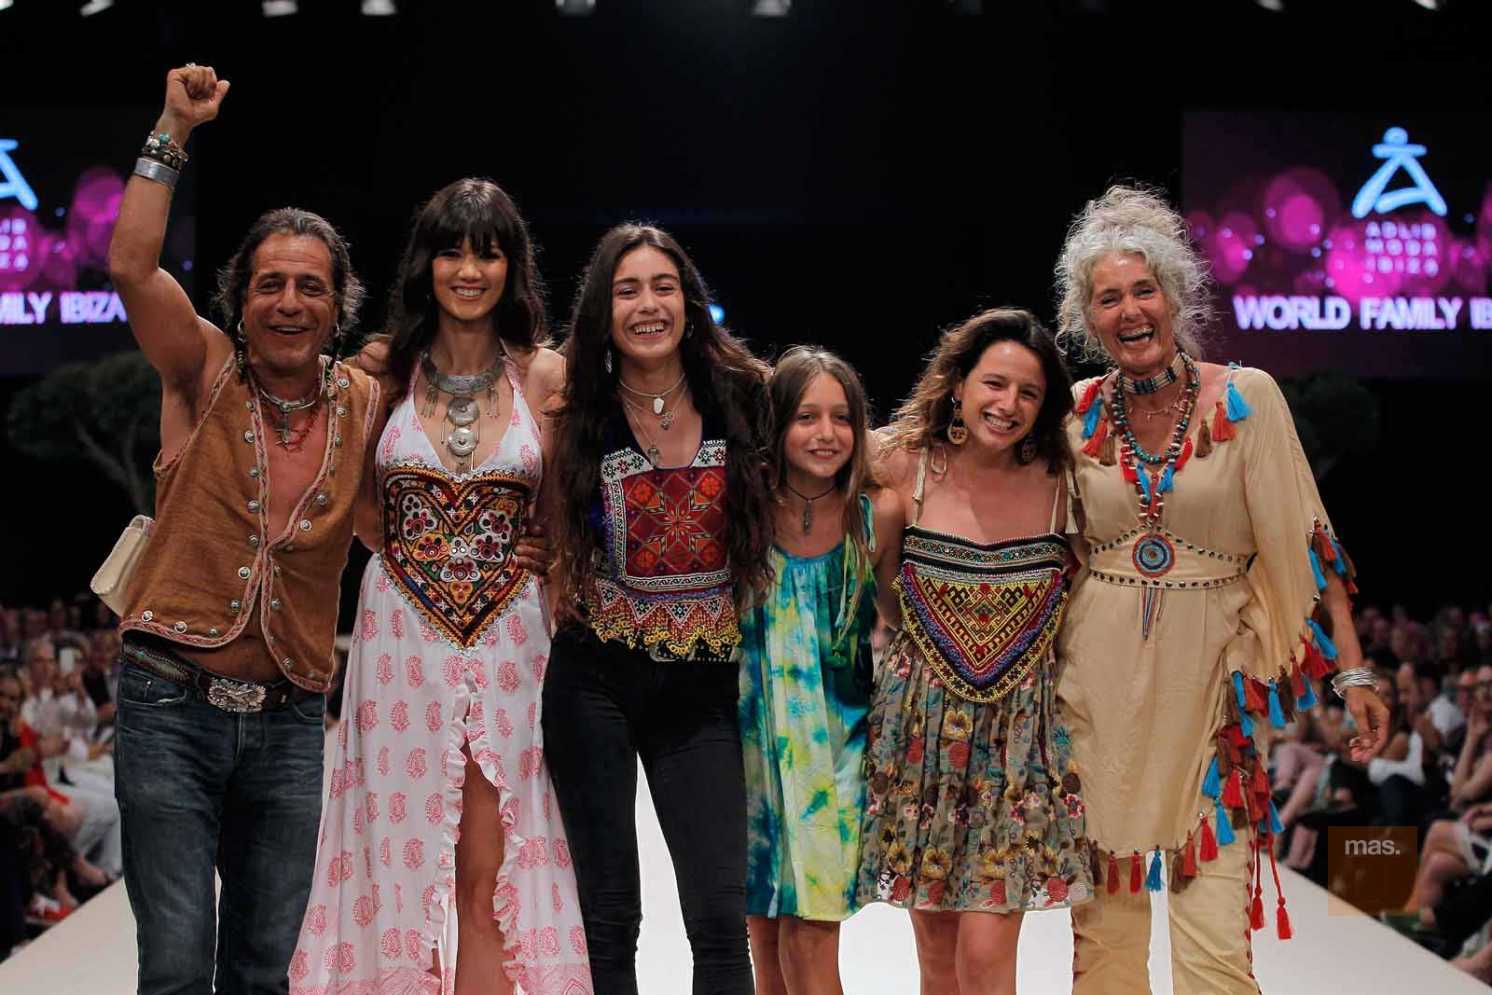 World Family Ibiza. Prendas artesanales para reflejar la belleza del mundo